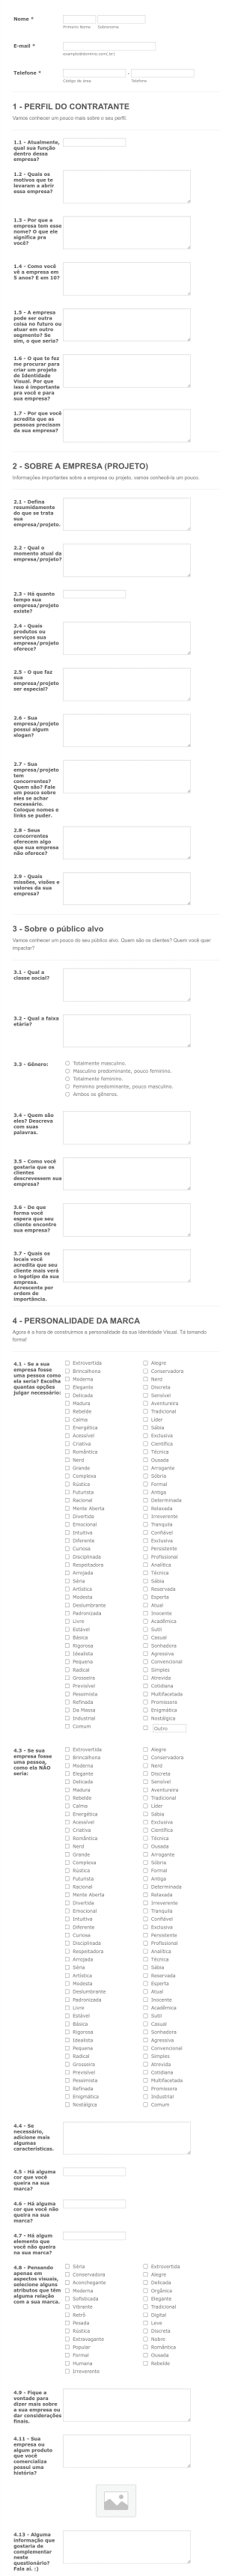 Entrepreneur Questionnaire In Portuguese Form Template